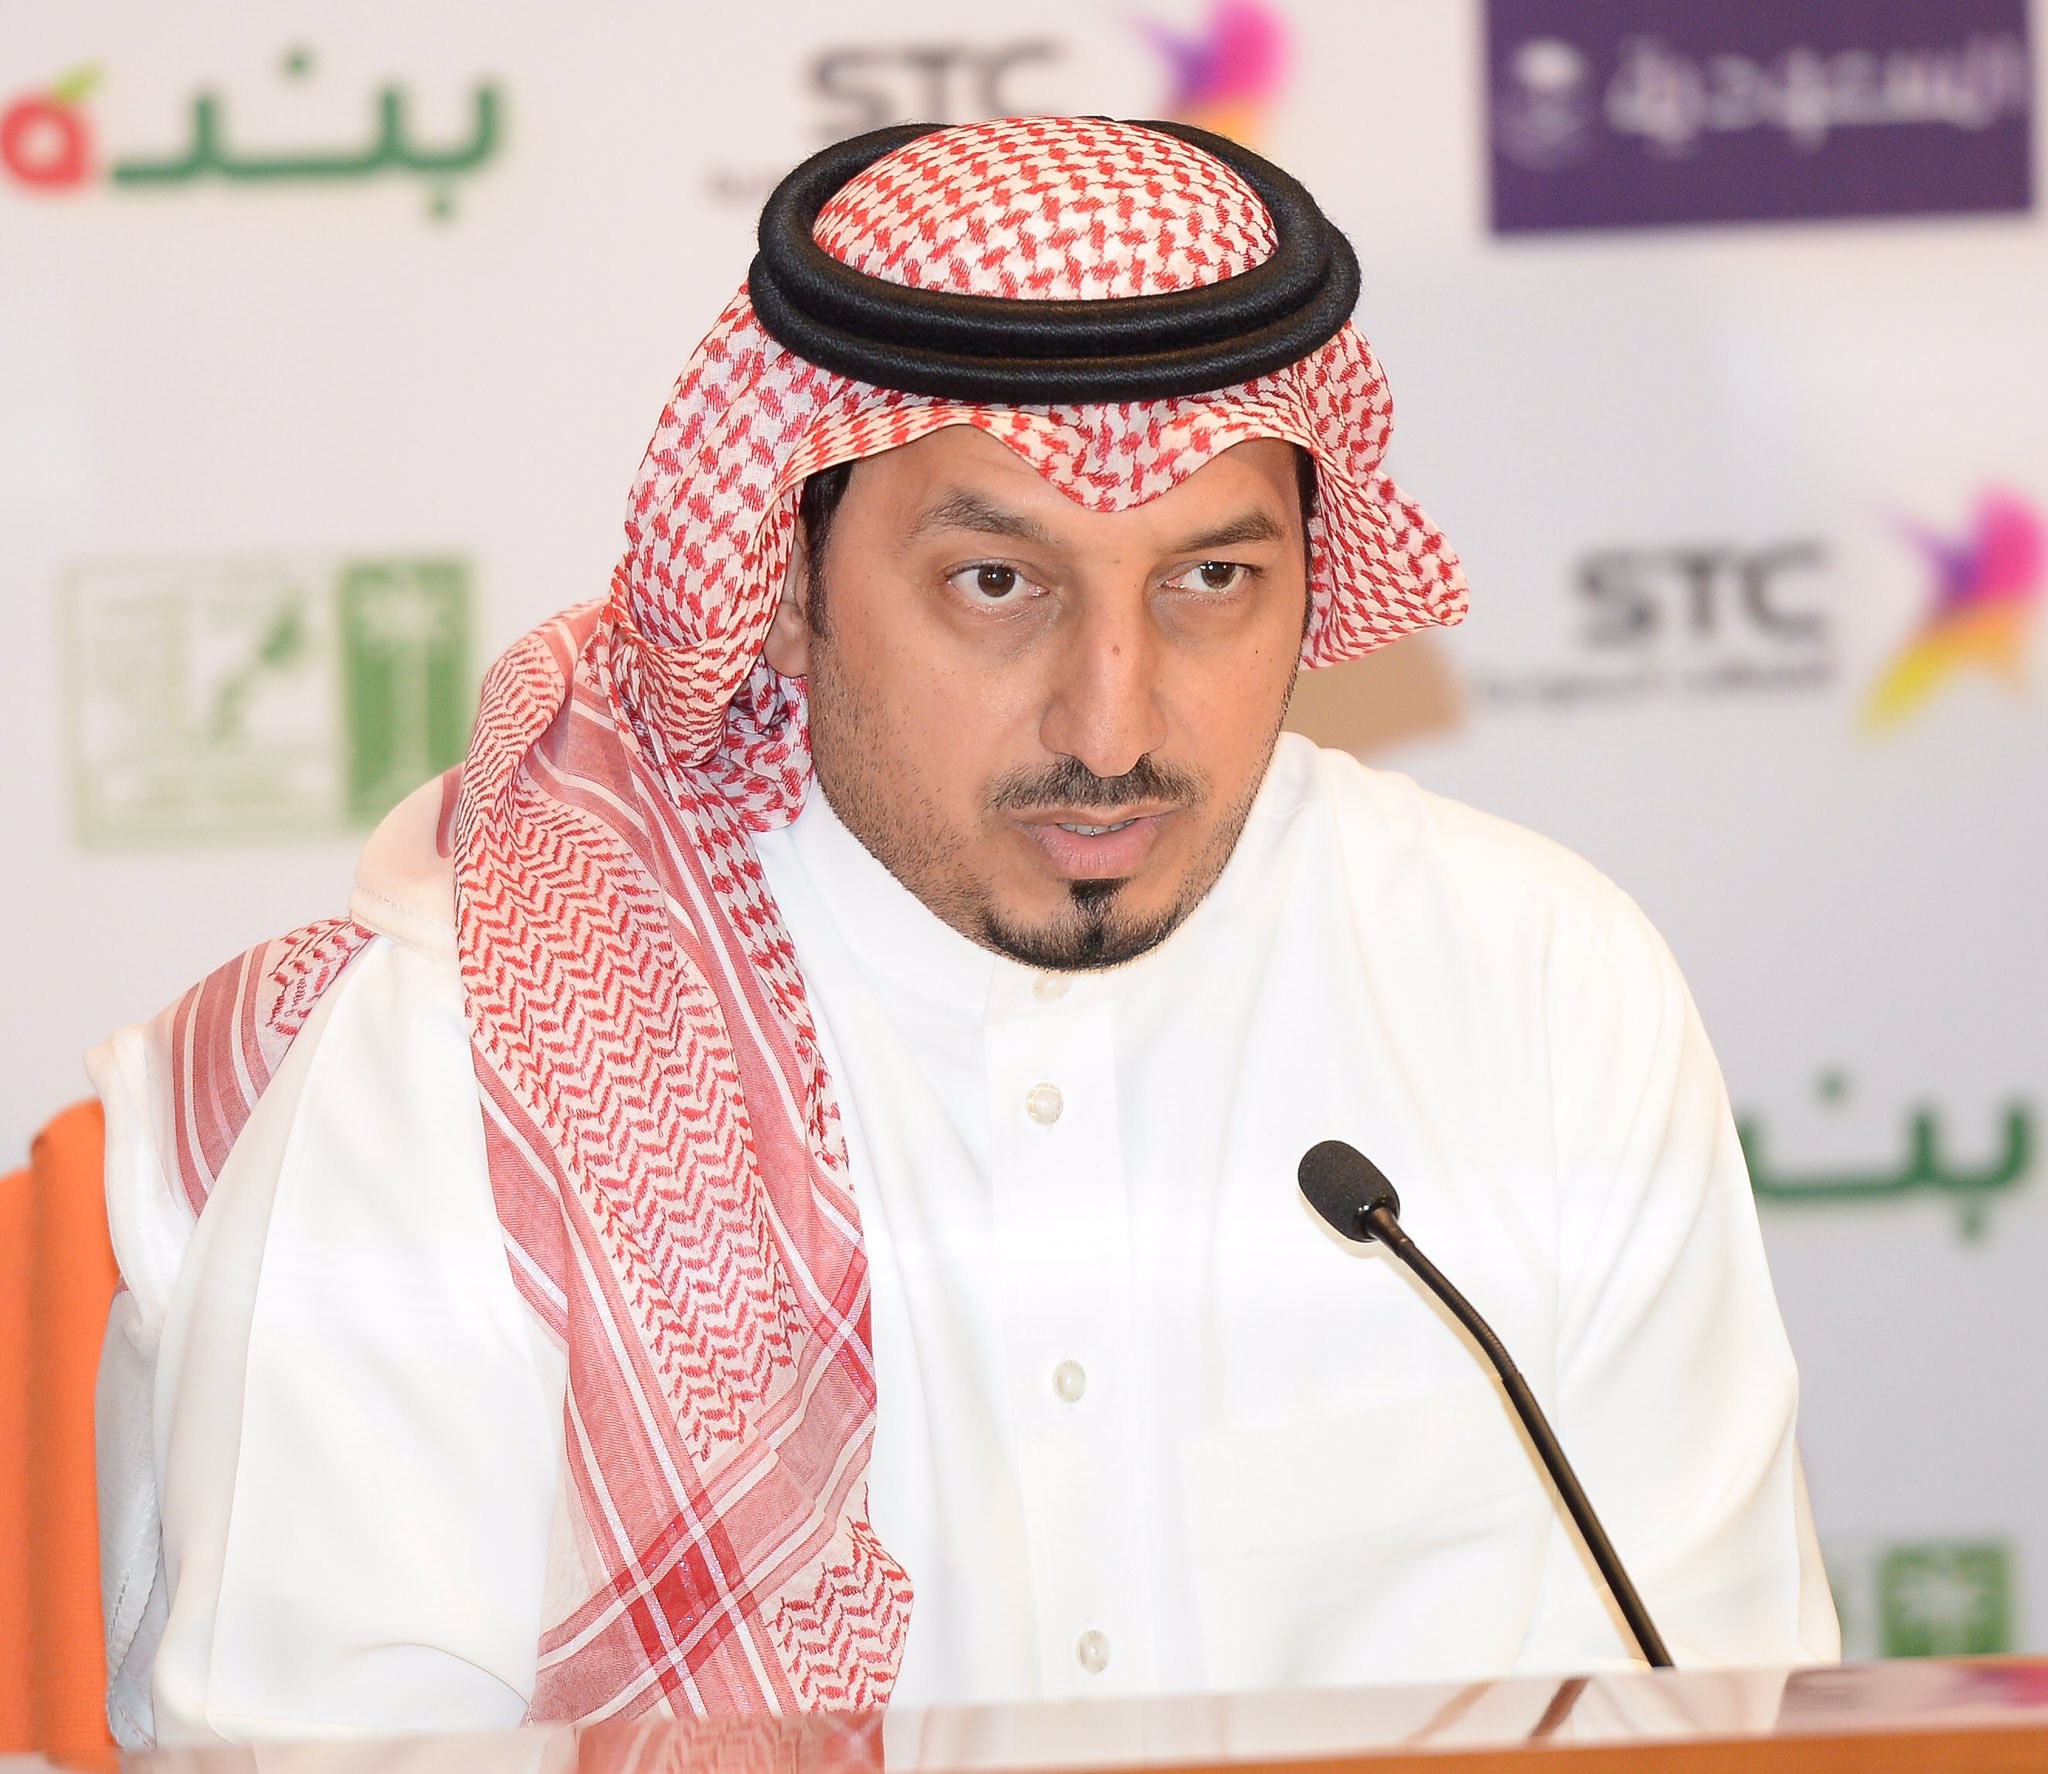 غياب المختصين بأنظمة الفيفا سبب مشاكل الأندية السعودية